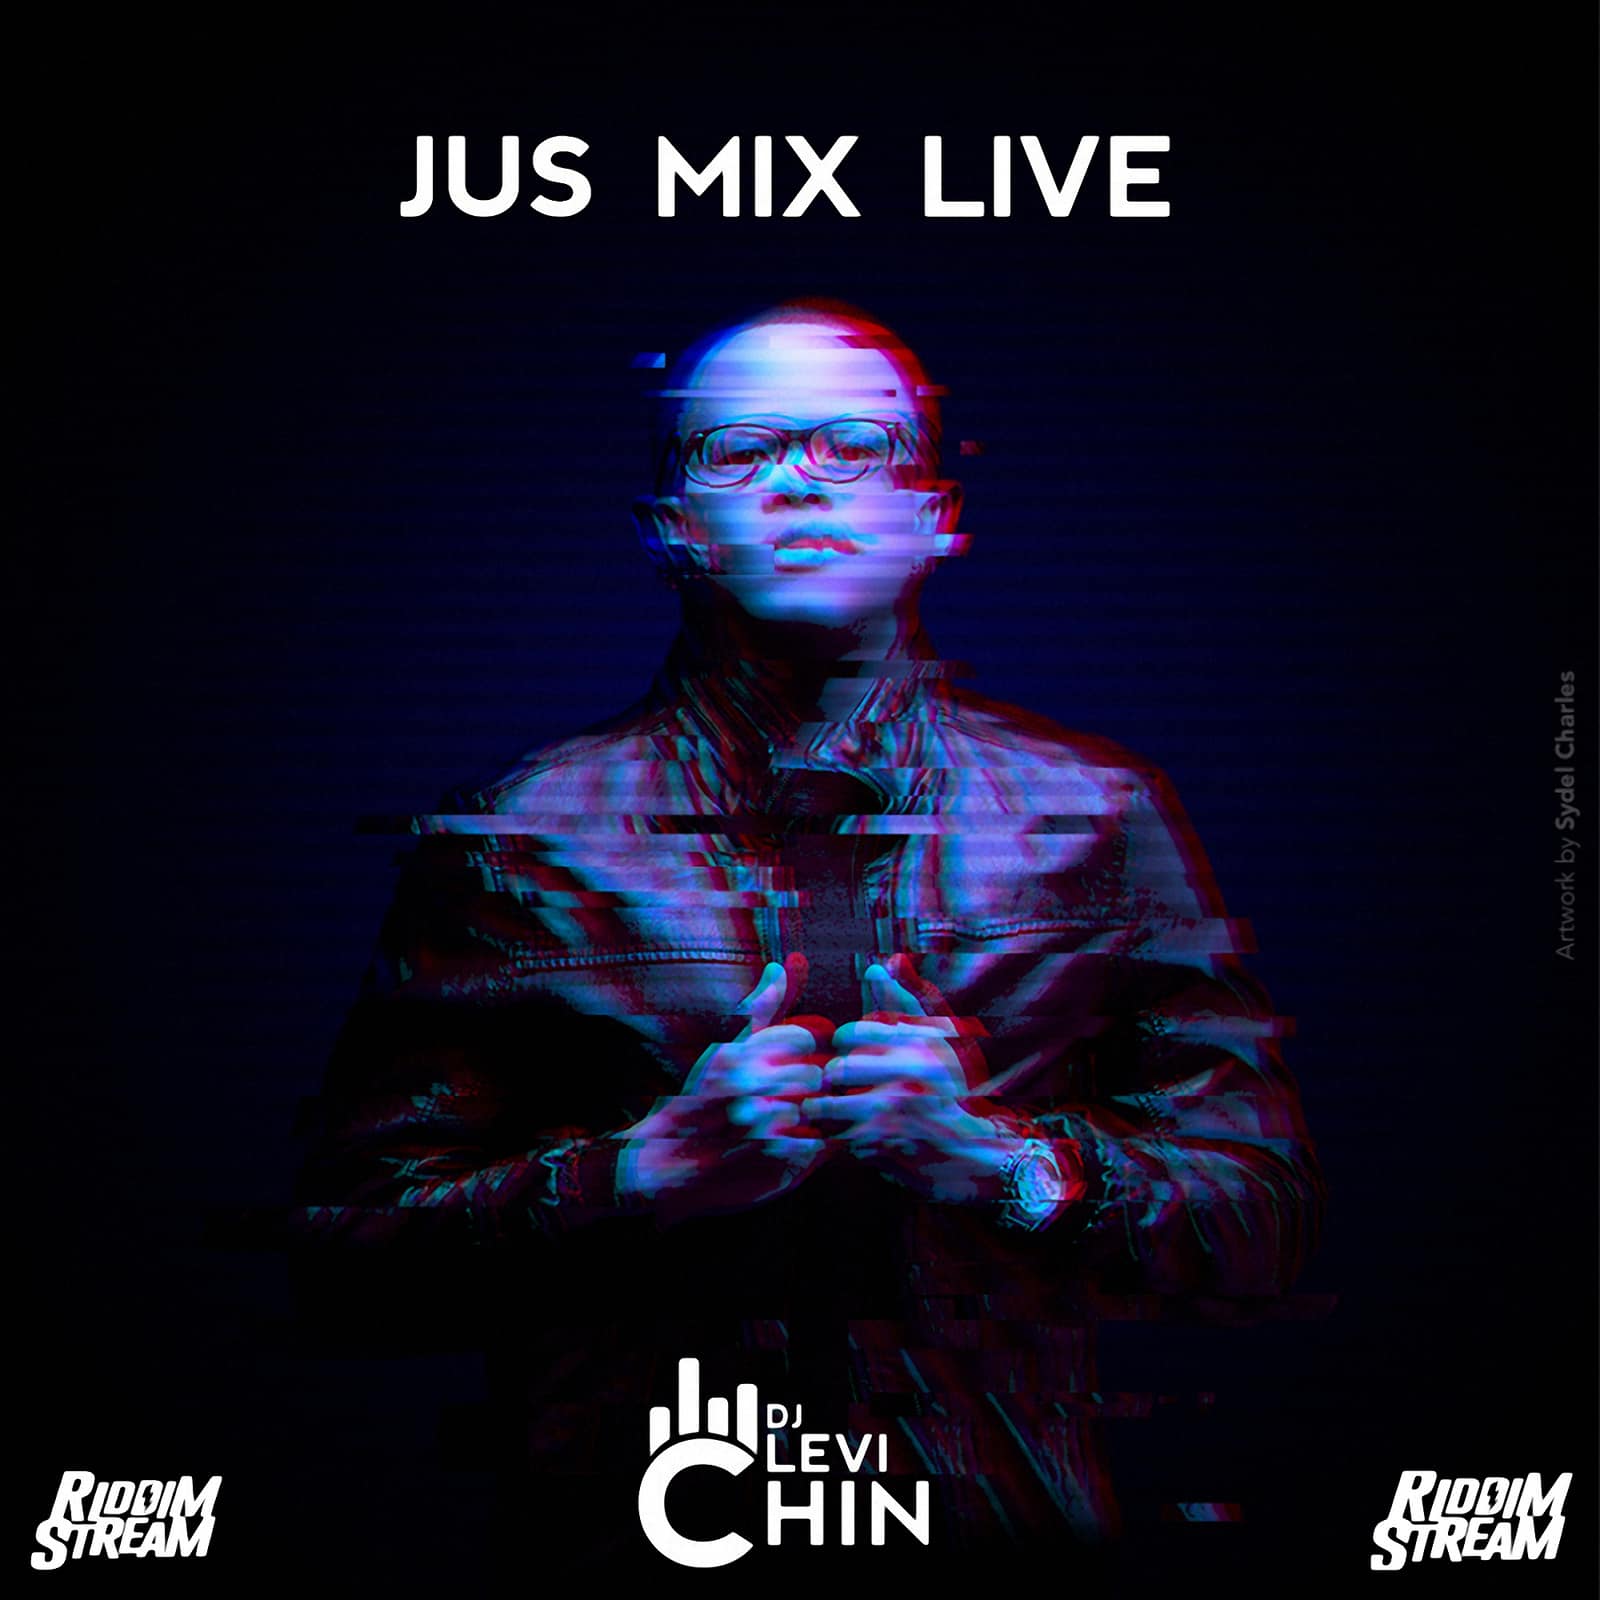 Dj Levi Chin - Jus Mix Live 004